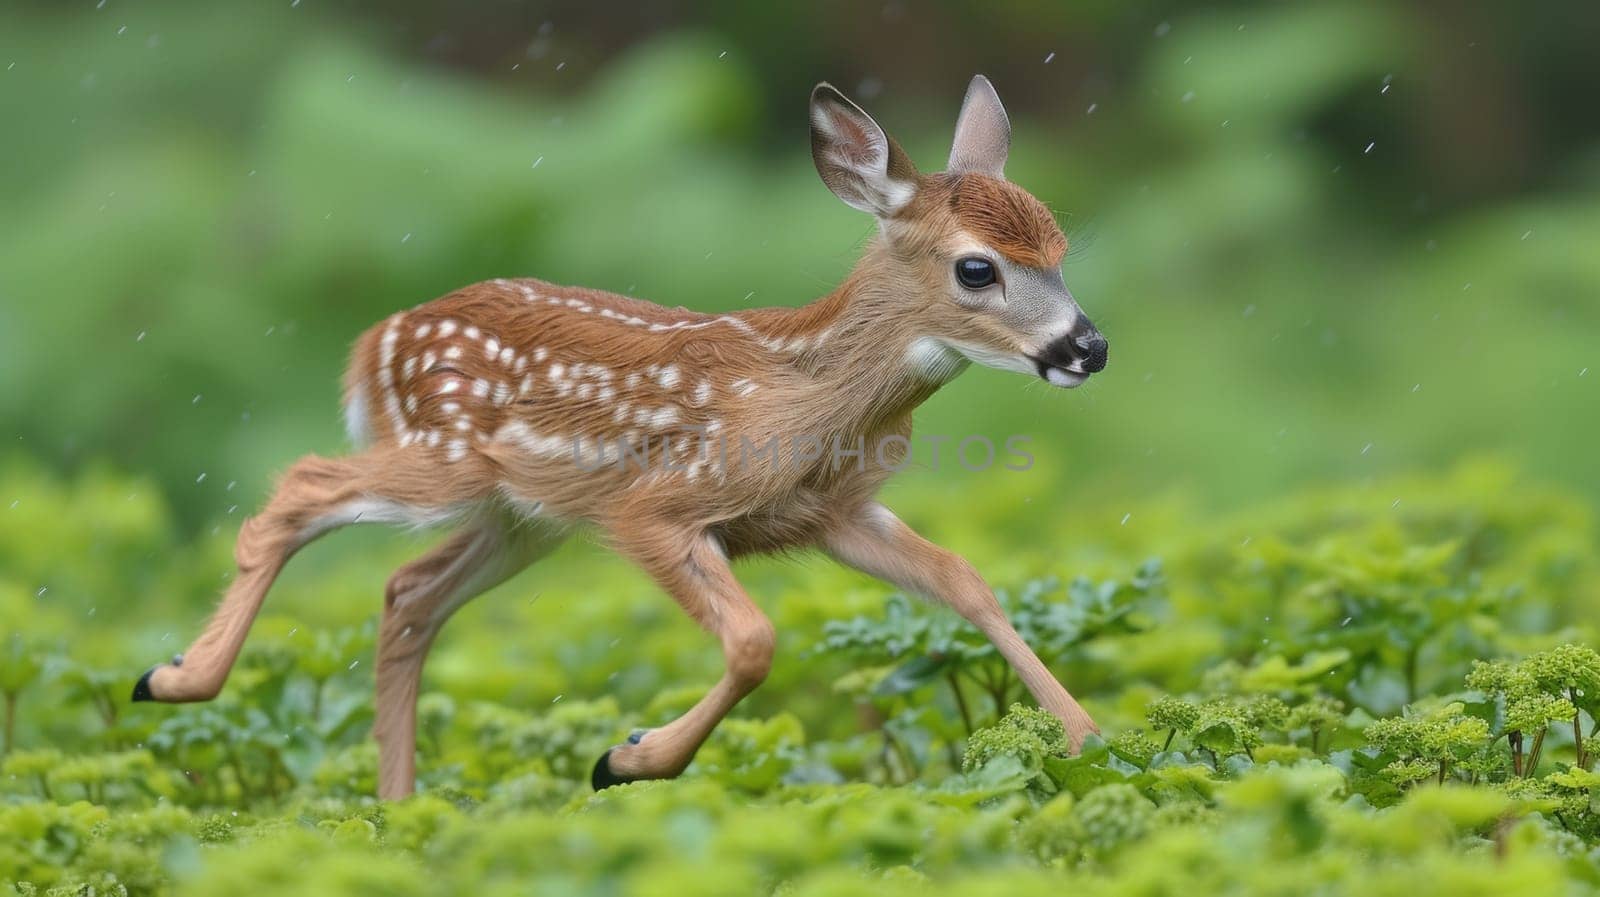 A baby deer running through a field of green grass